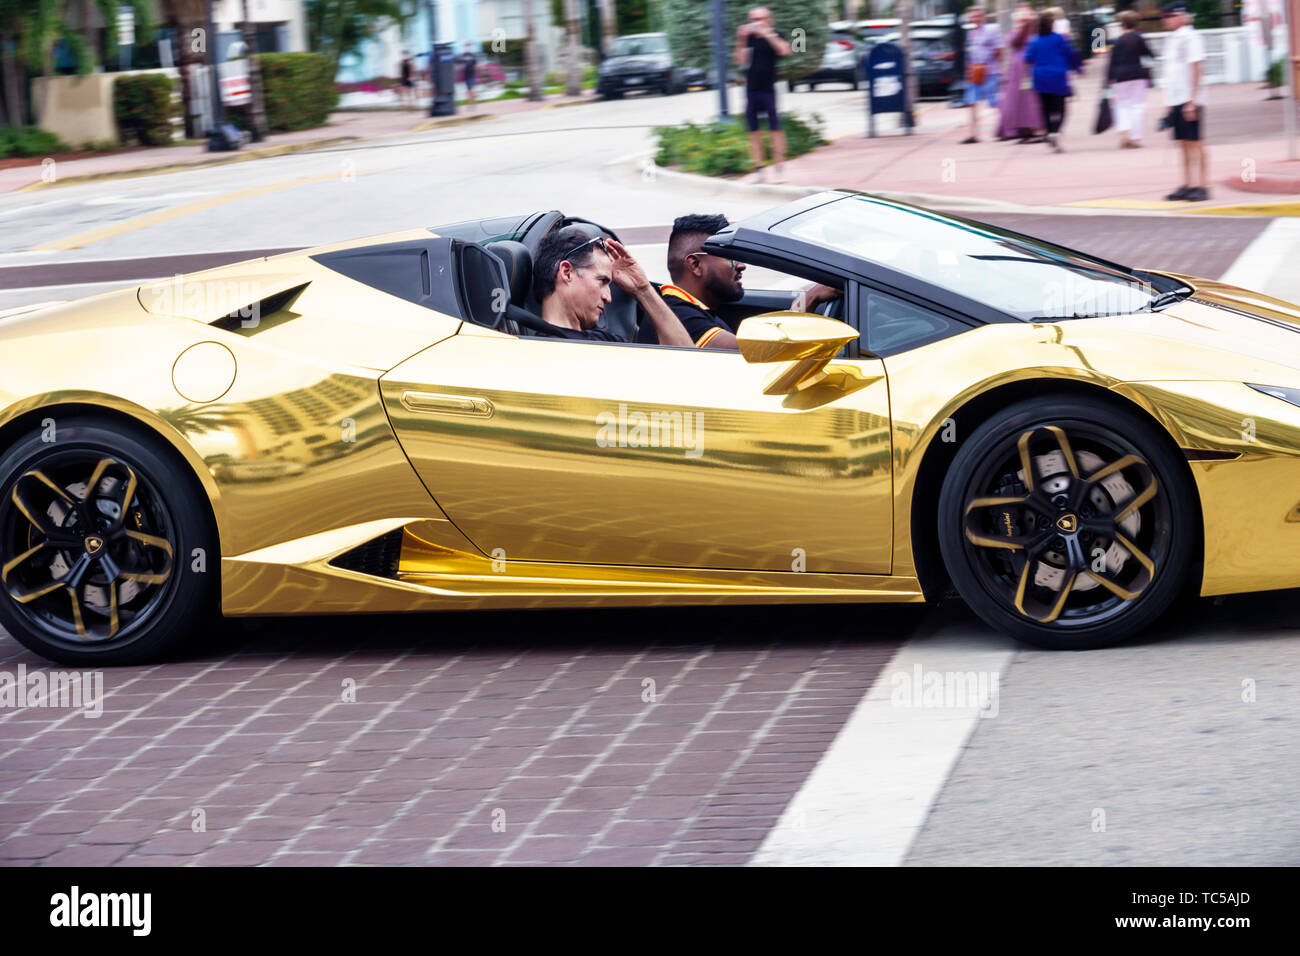 Miami Beach Florida, Lamborghini auto sportive di lusso convertibile oro, neri africani minoranza etnica africani, adulti uomo uomo uomini maschi, drivin Foto Stock